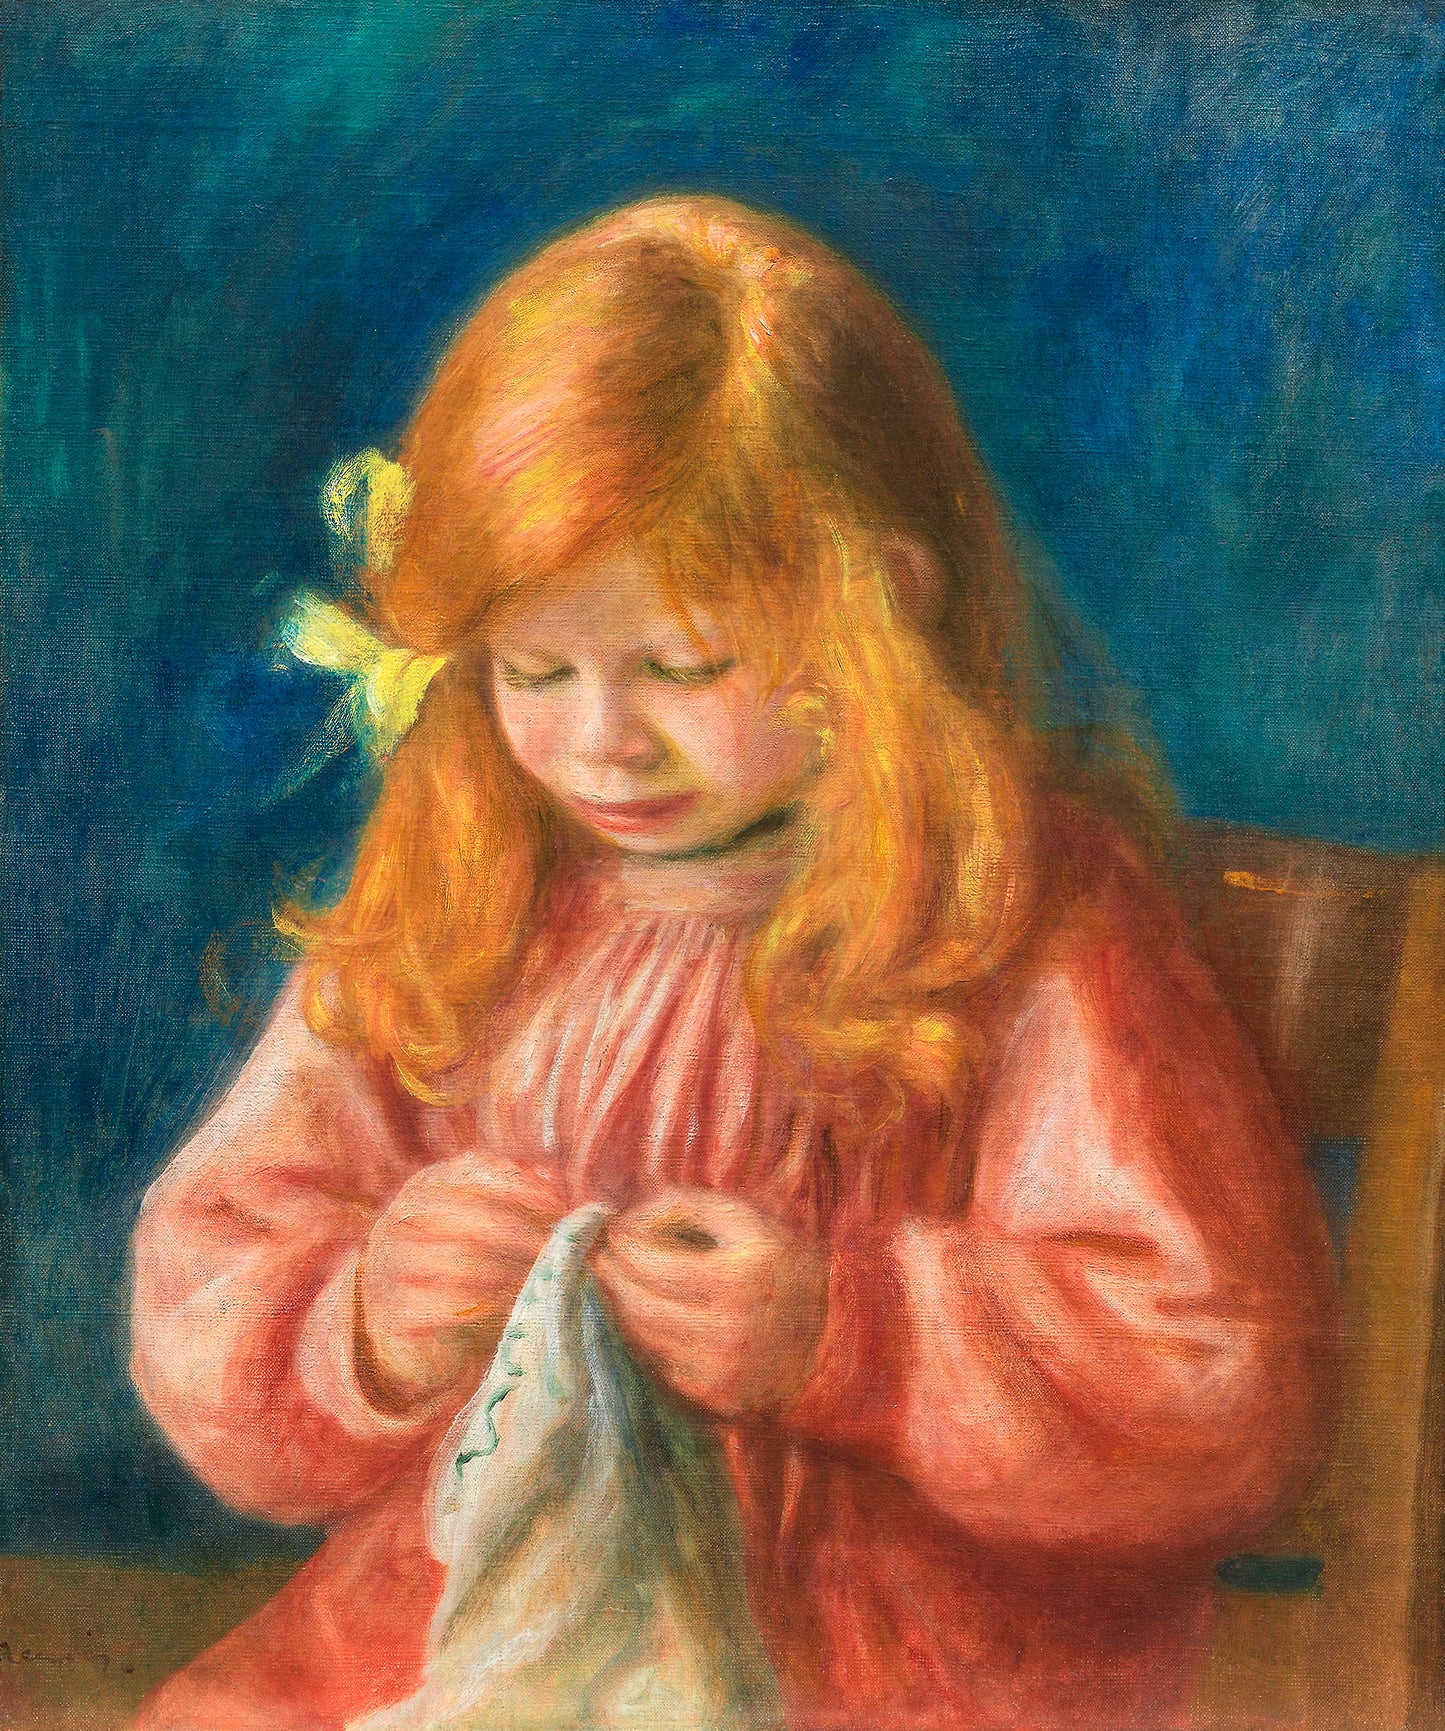 Pierre-Auguste Renoir - Jean Renoir Sewing 1899 - Digital Art - JPG File Download